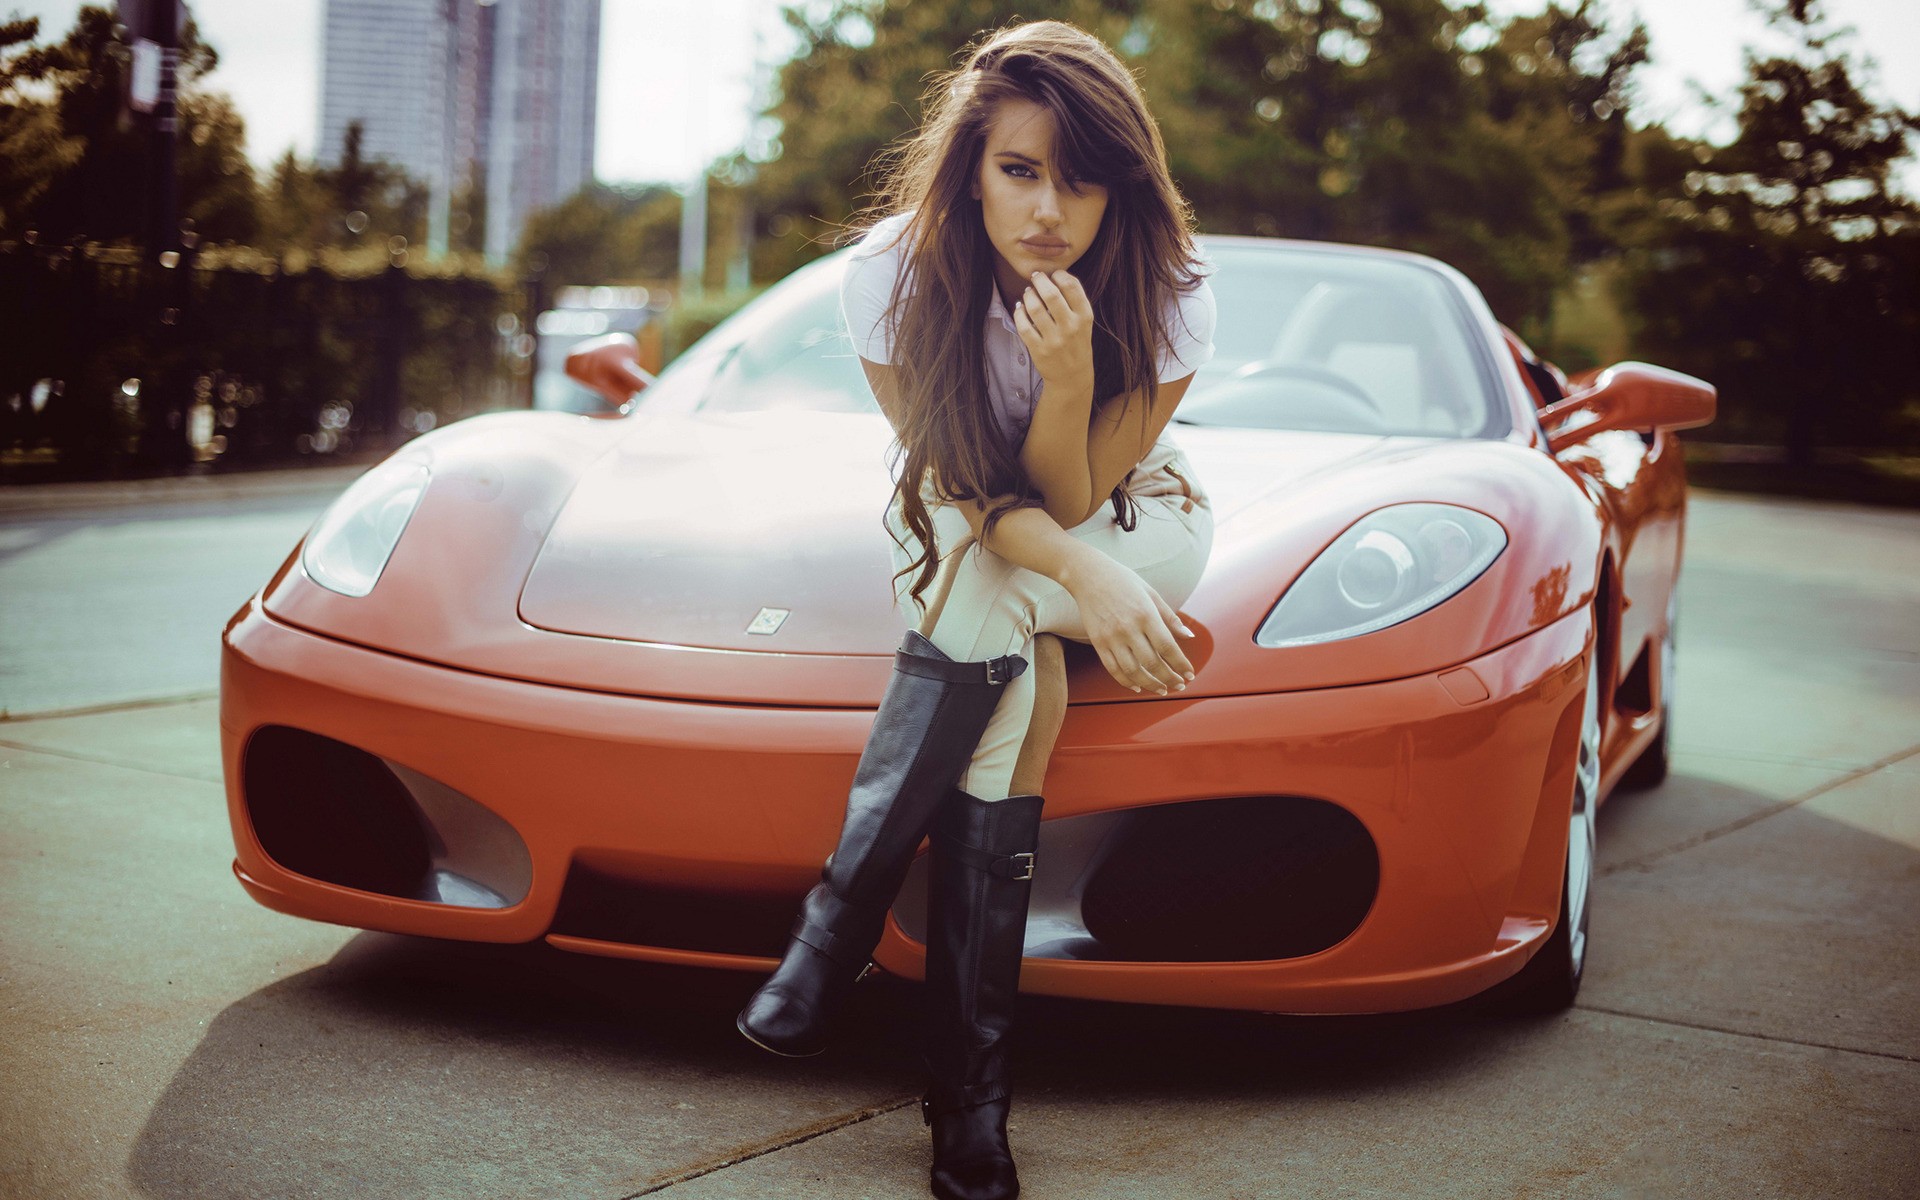 Girls Girl sitting on the hood of the orange Ferrari